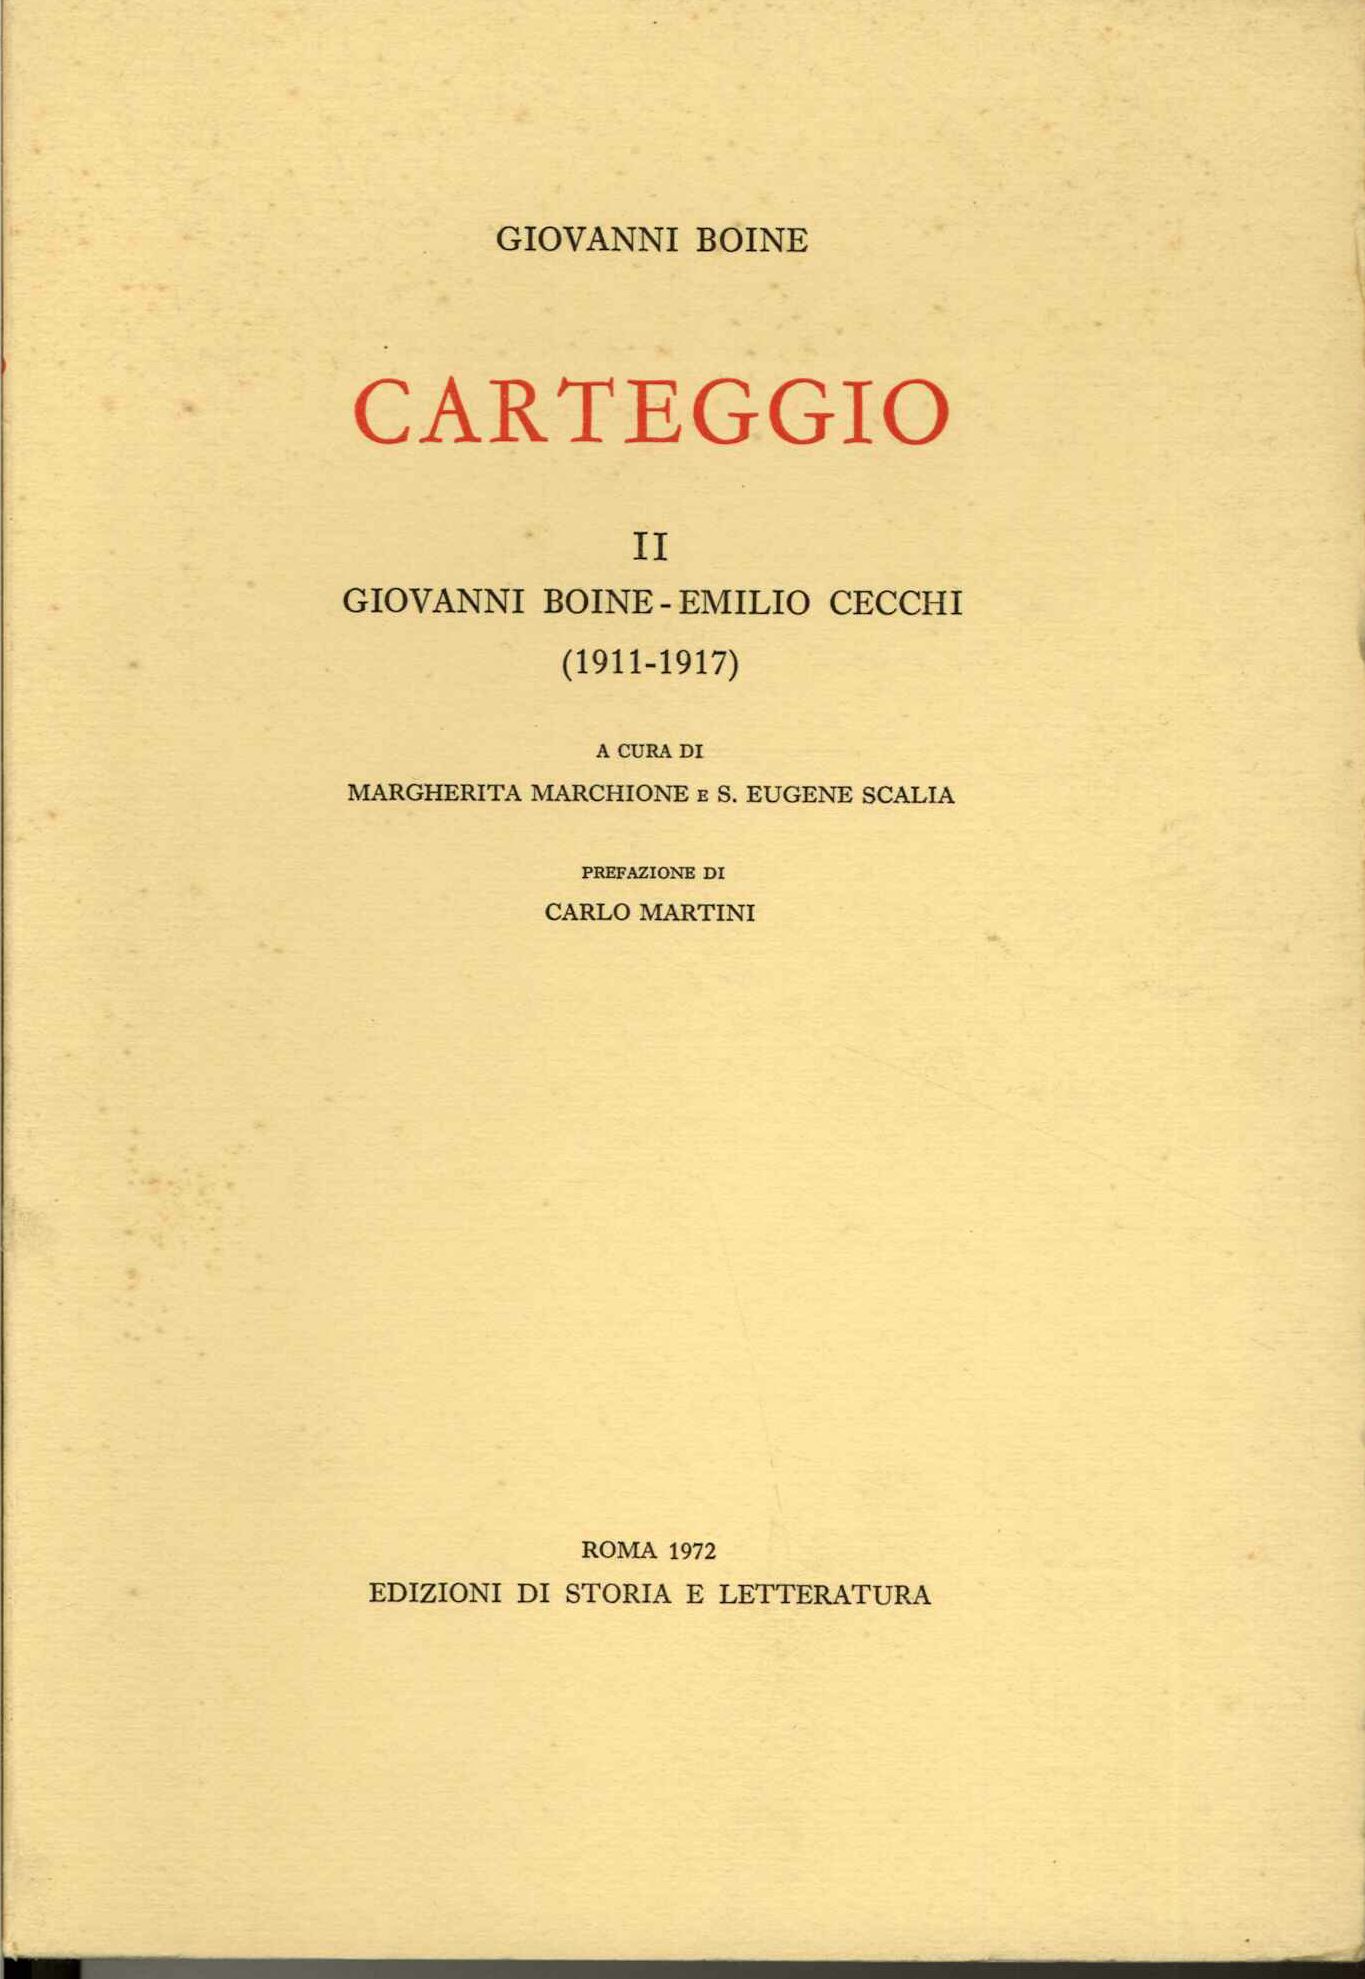 Carteggio I Giovanni Boine - Giuseppe Prezzolini (1908-1915)